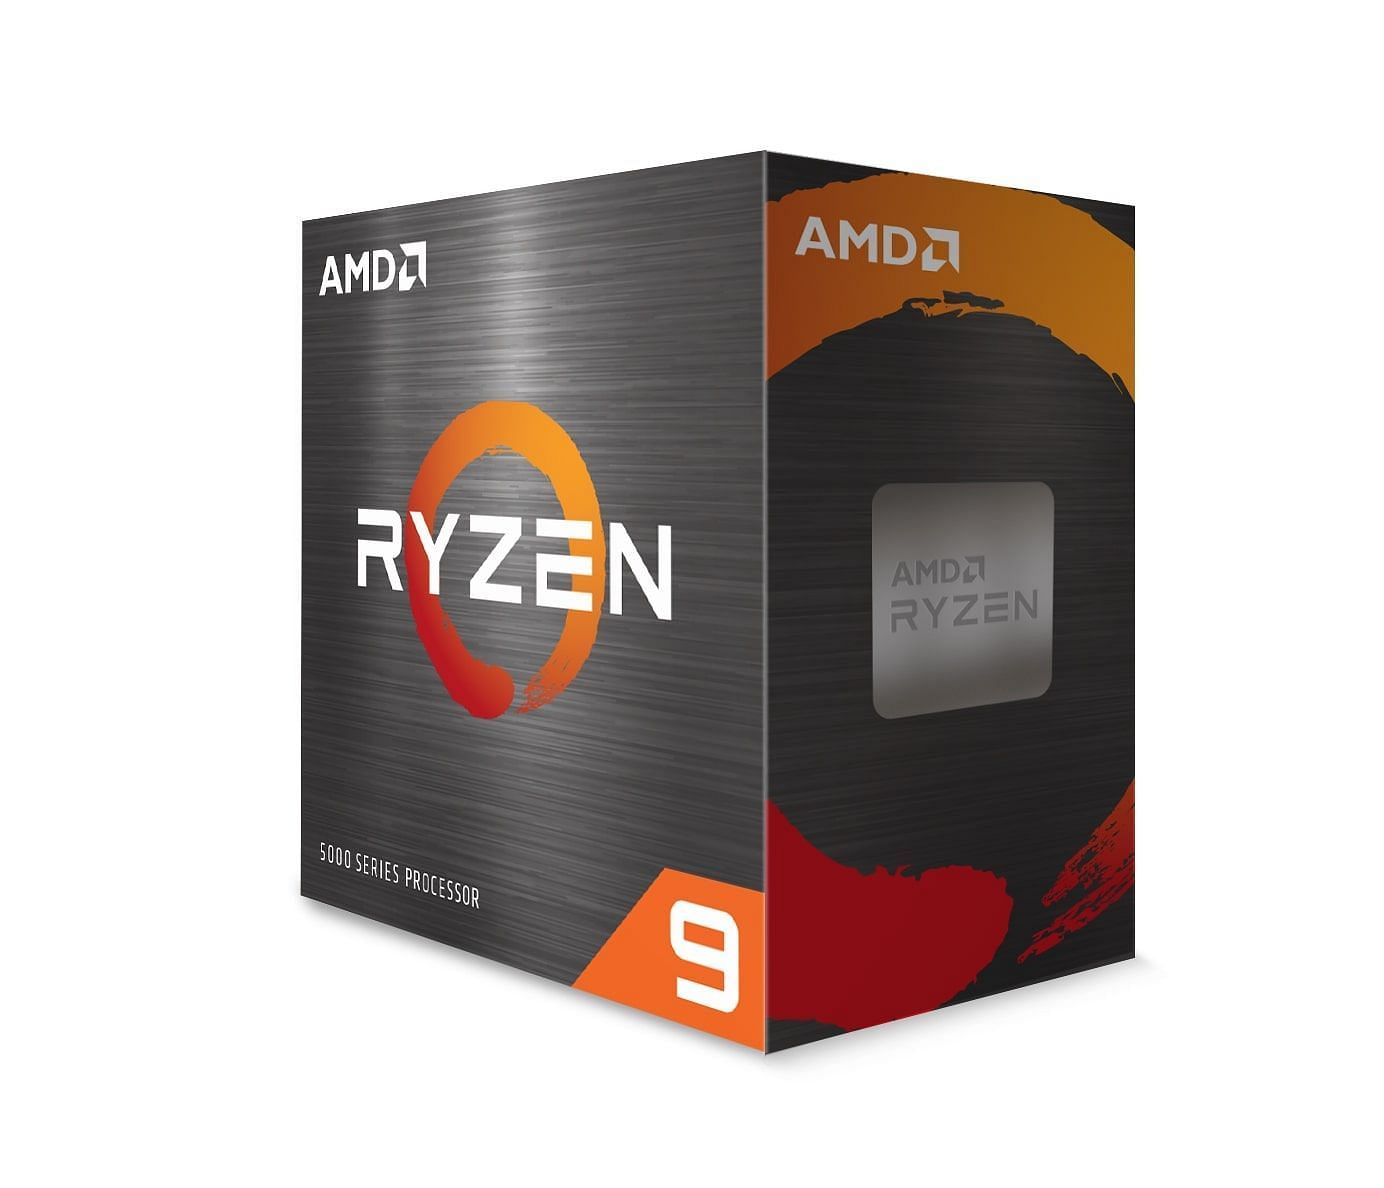 AMD Ryzen 9 5900X (Image via Amazon)